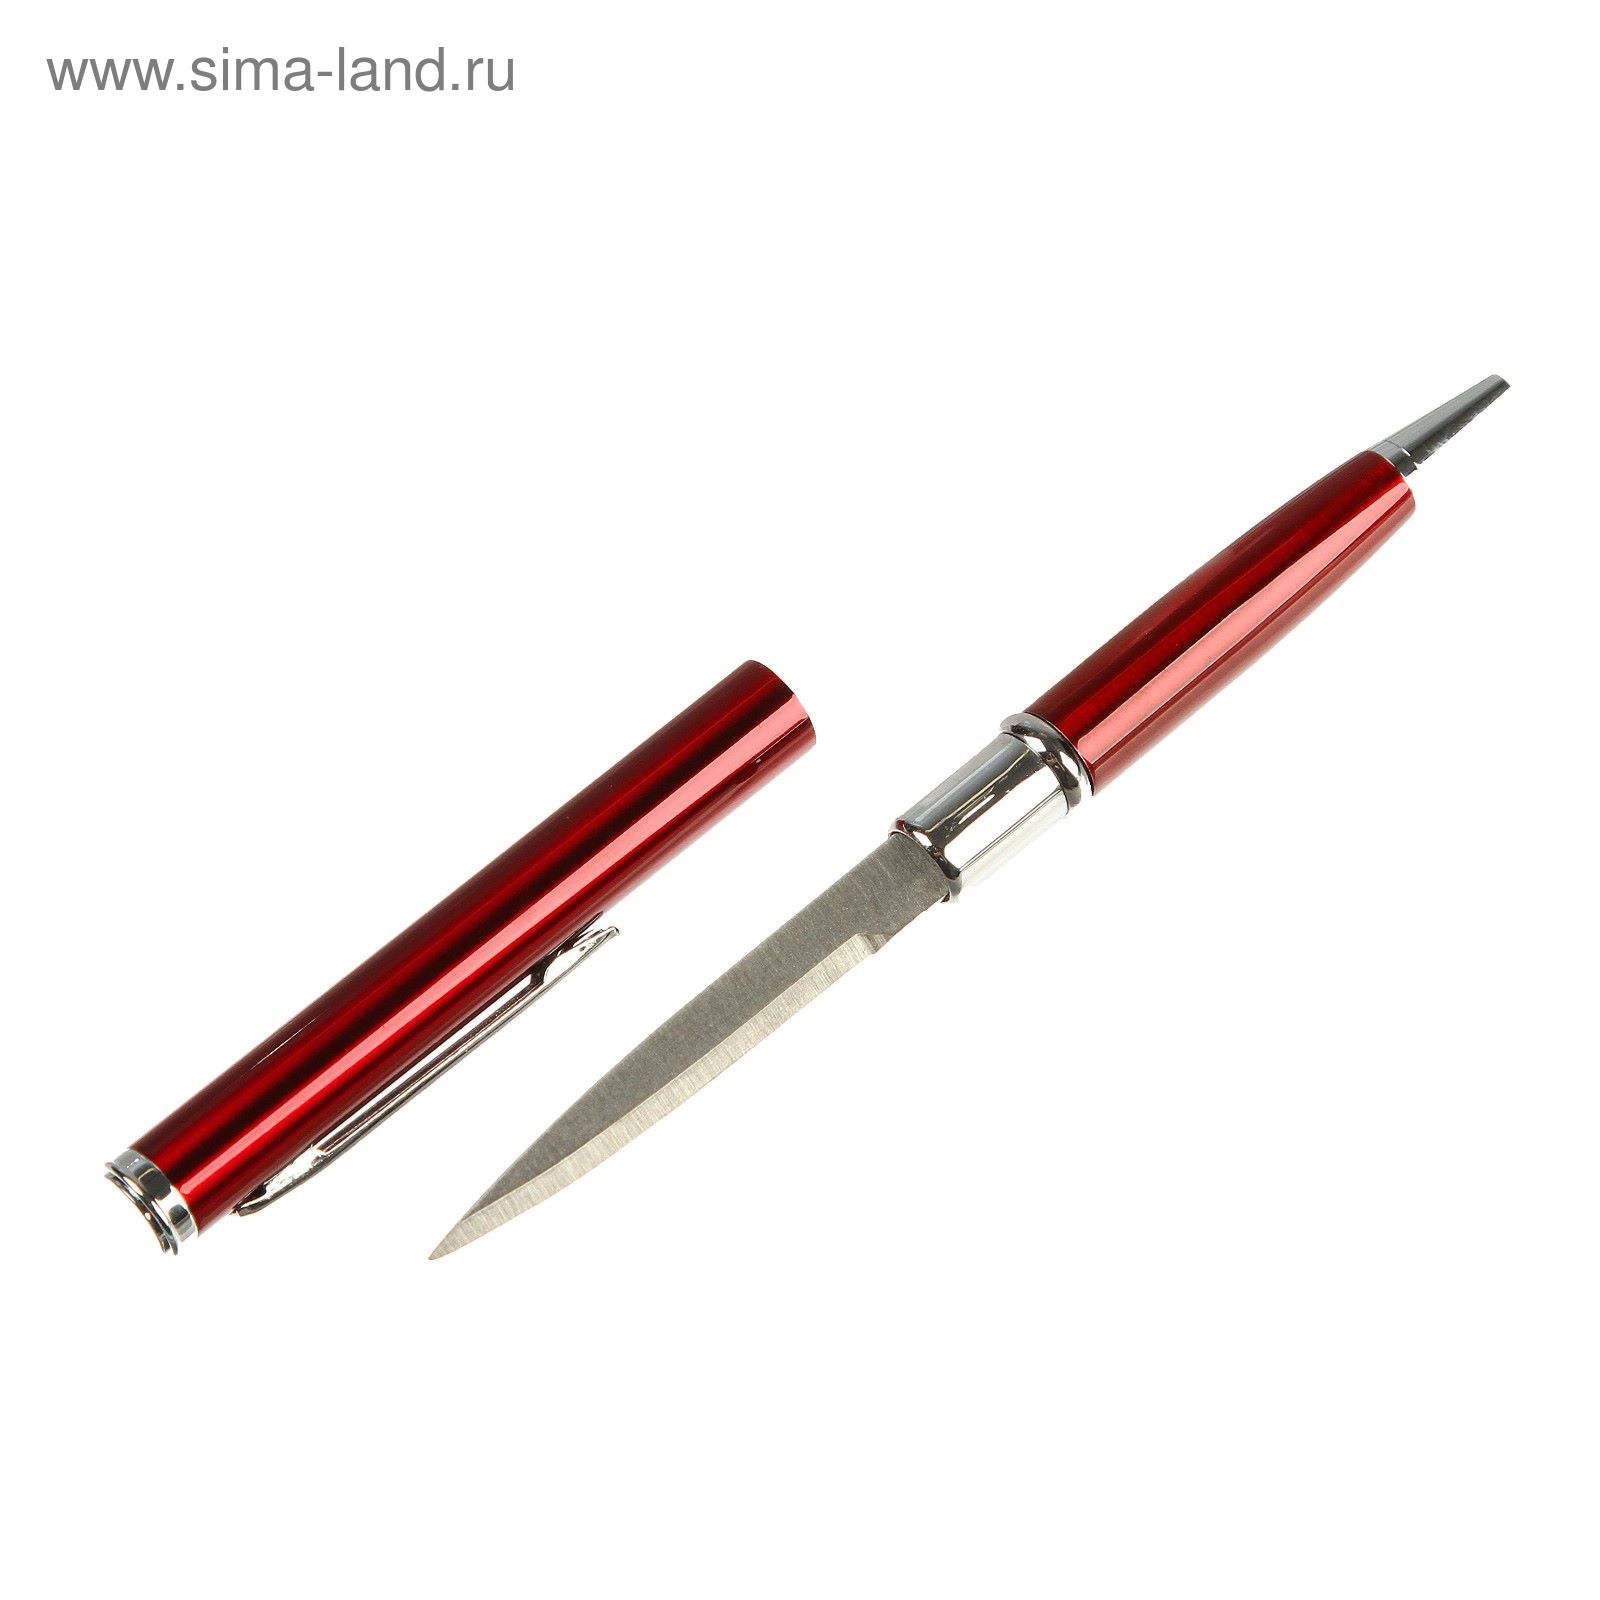 Нож-ручка, лезвие копьеобразное 5,5см, микс цветов, рукоять 7,2см